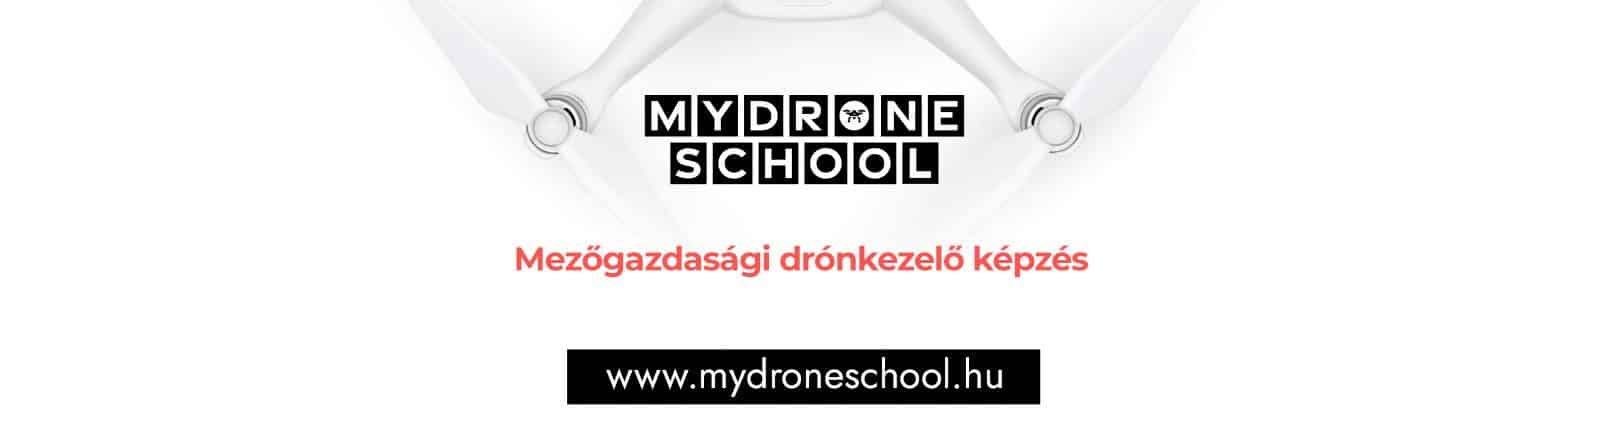 Ipari drónkezelő képzés - mydroneschool.hu